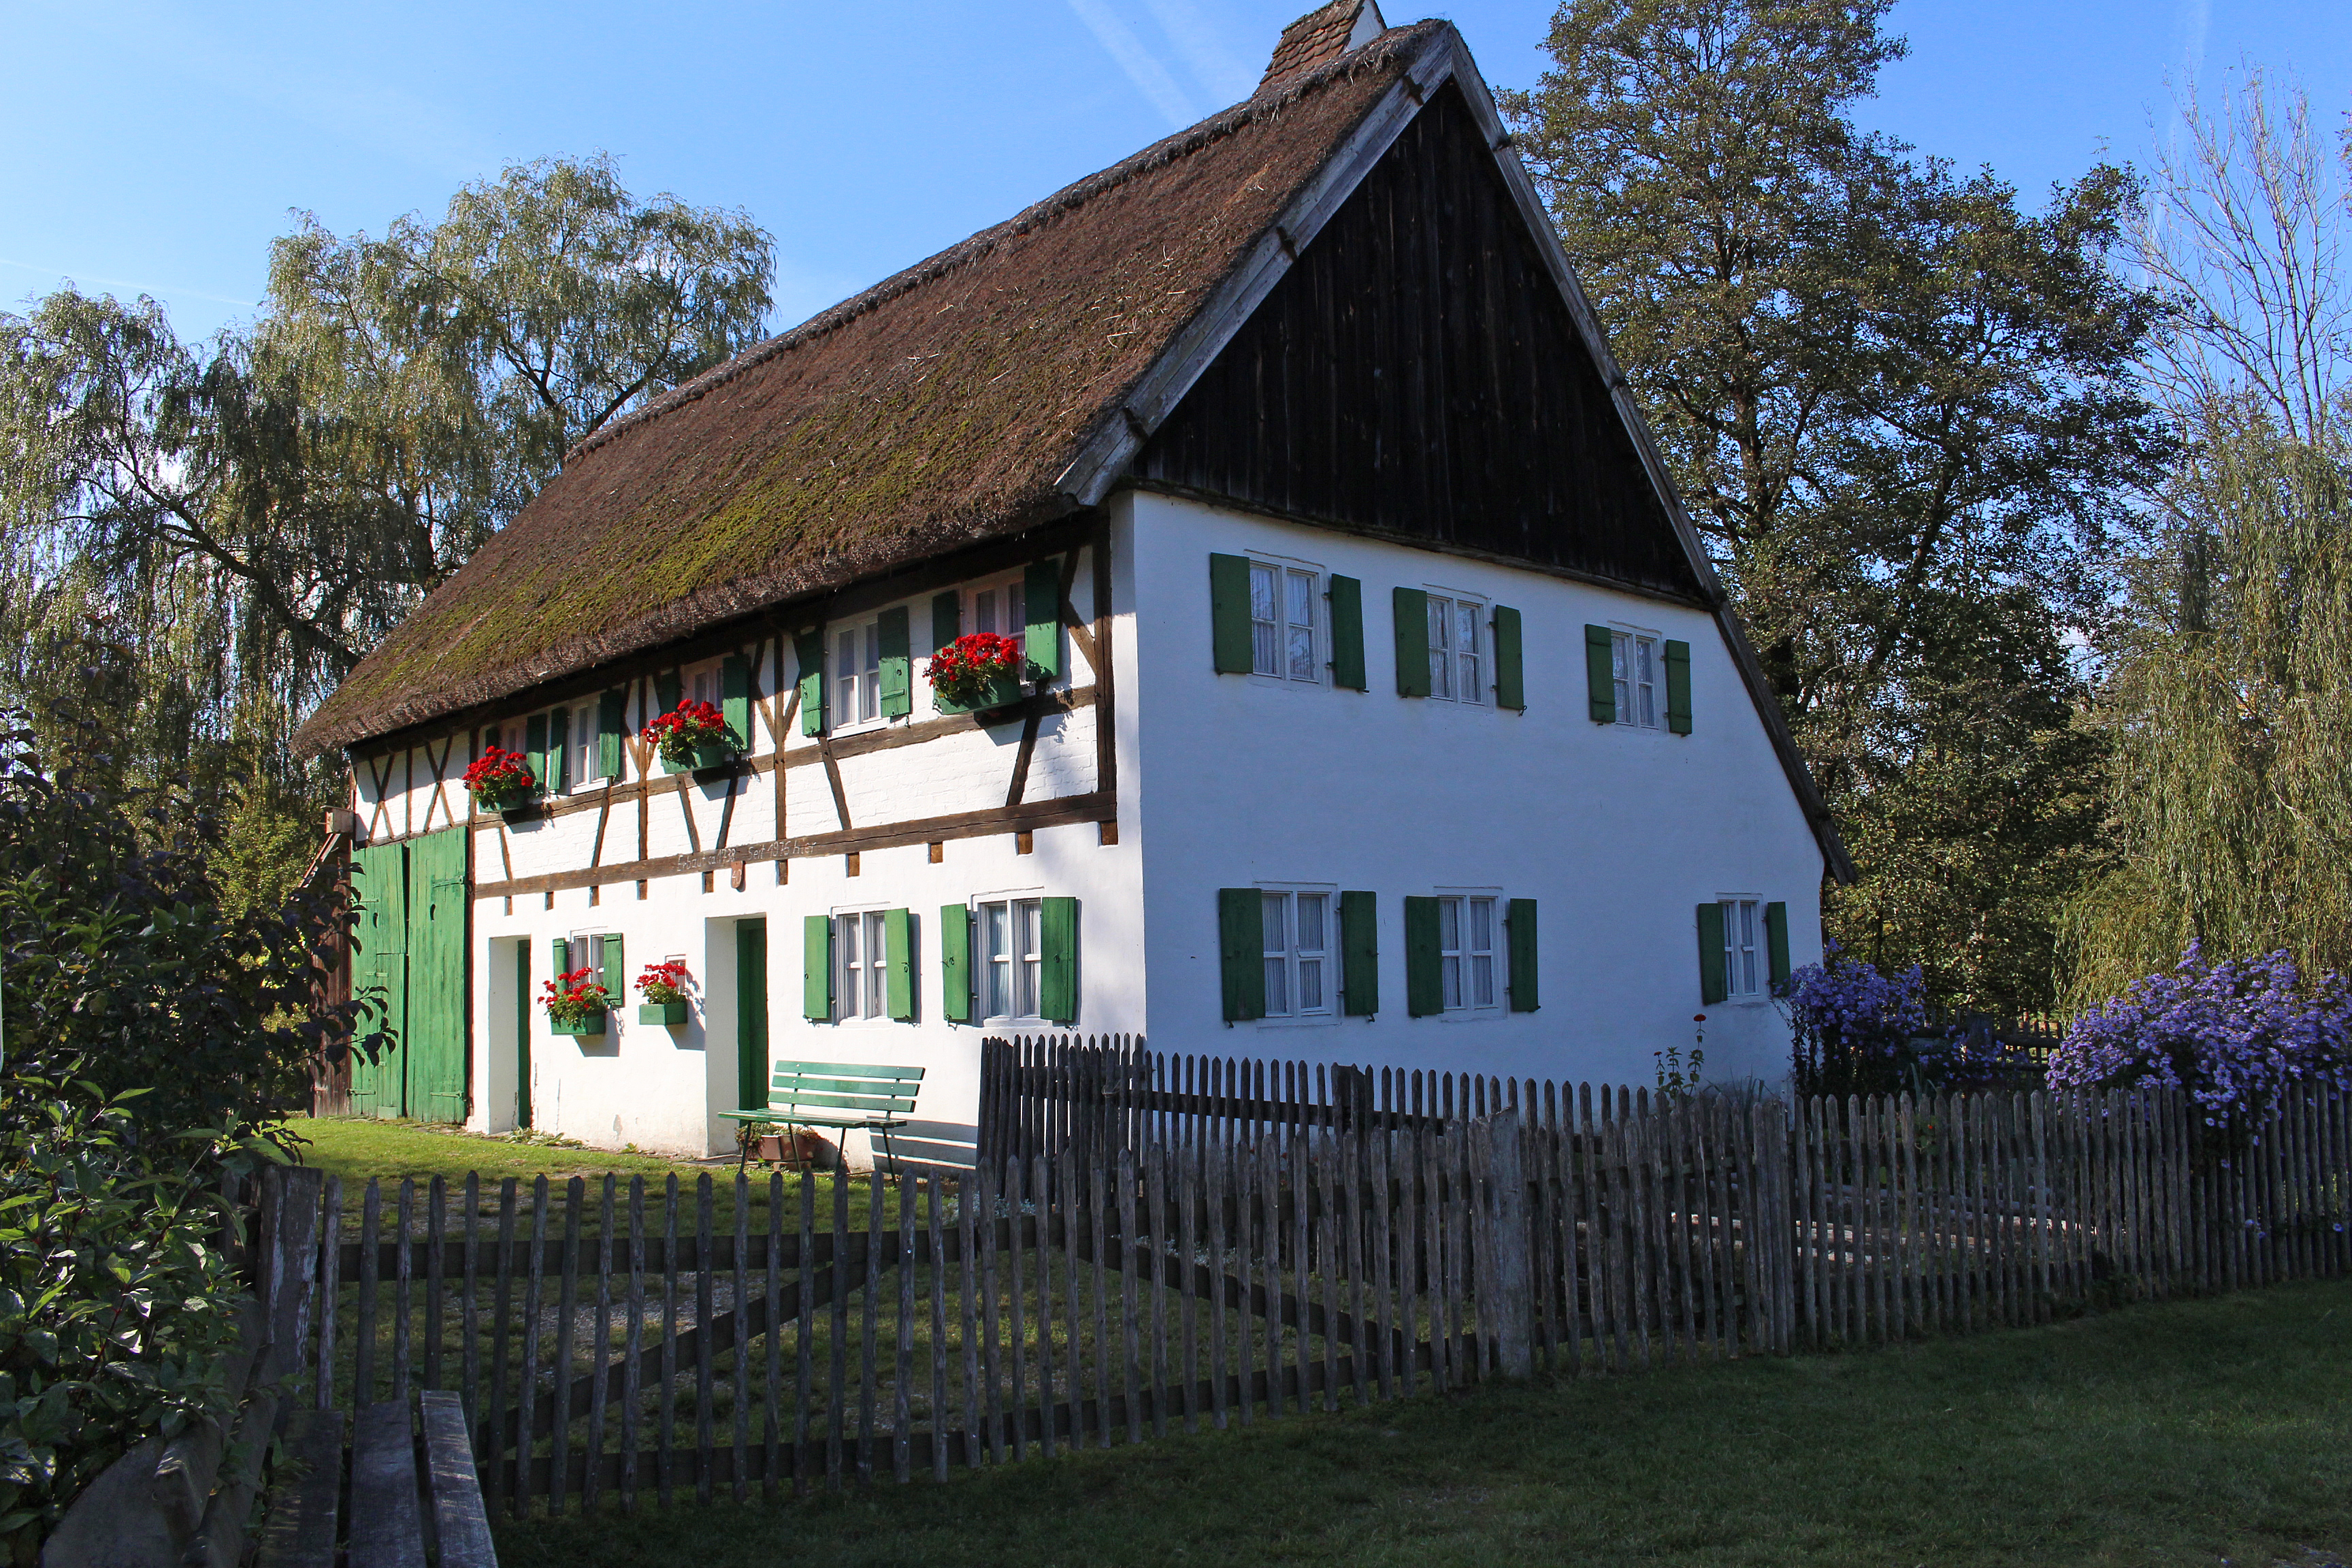 Staudenhaus